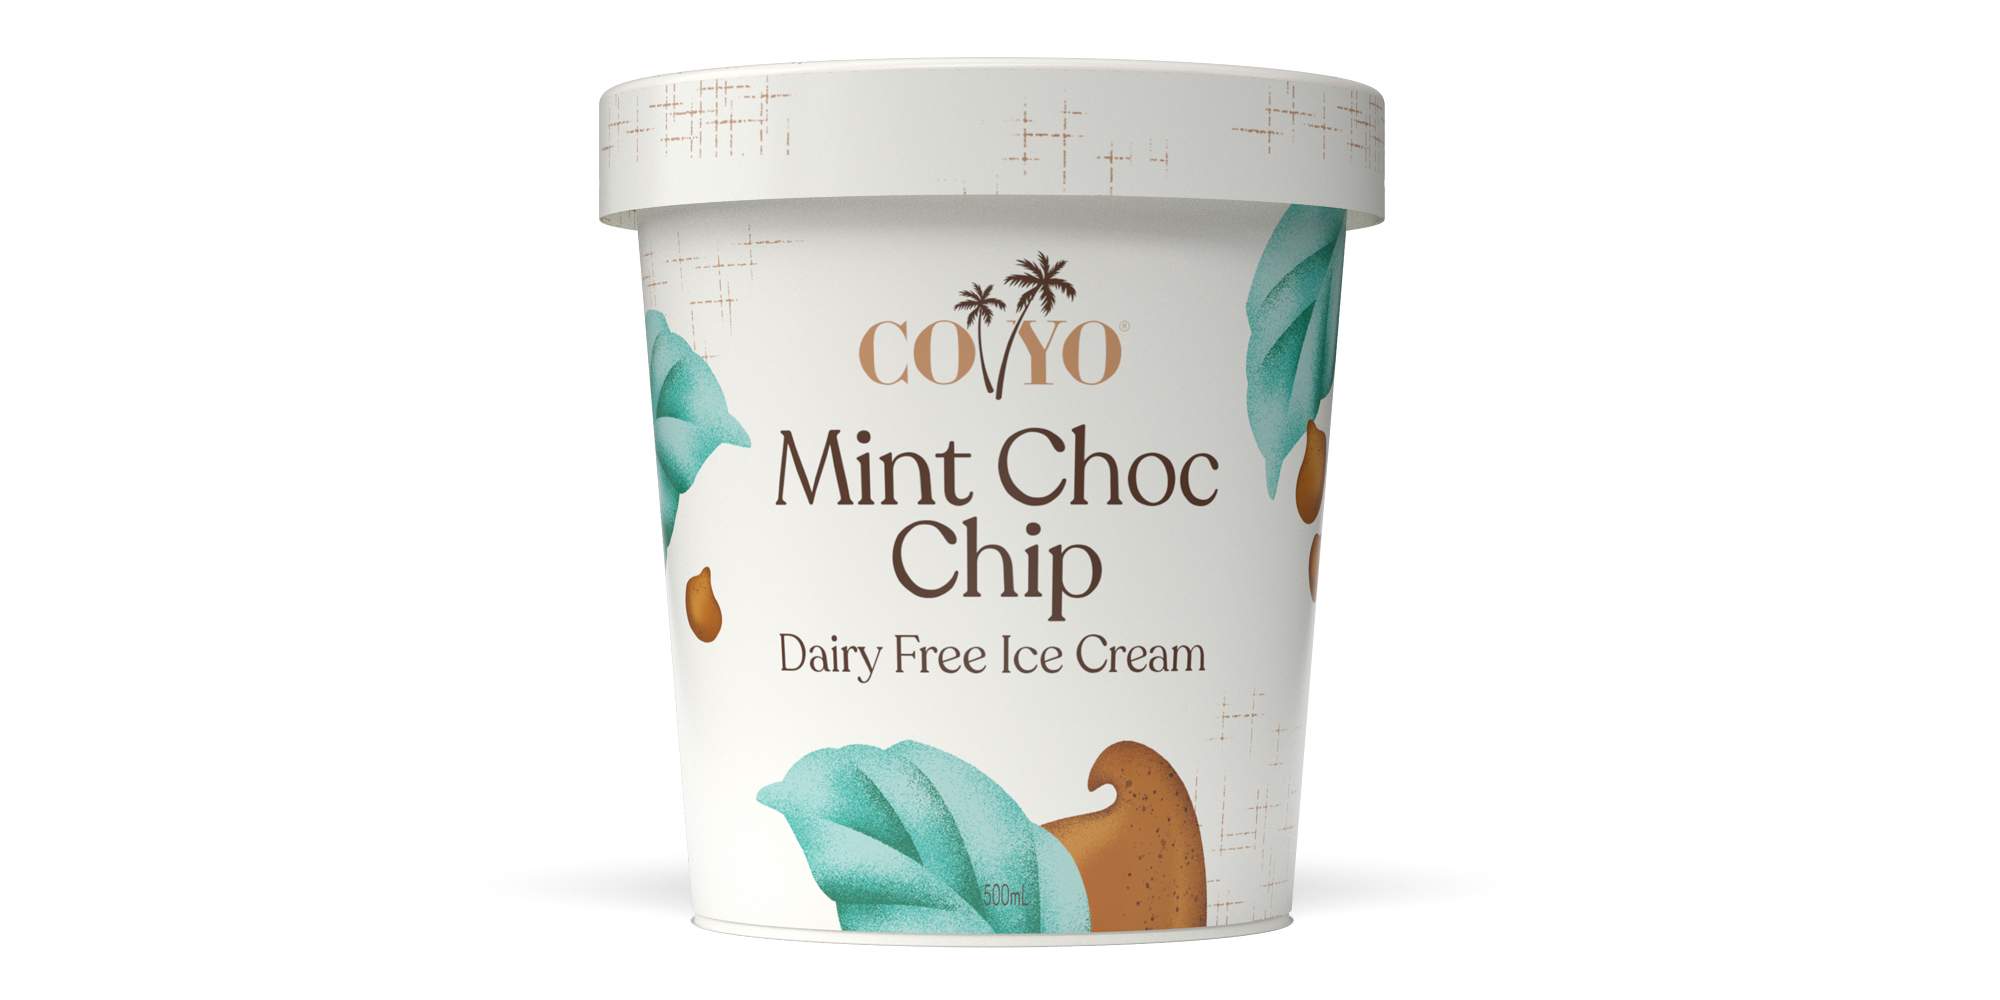 Mint_Choc_Chip_Dairy_Free_Ice_Cream_COYO